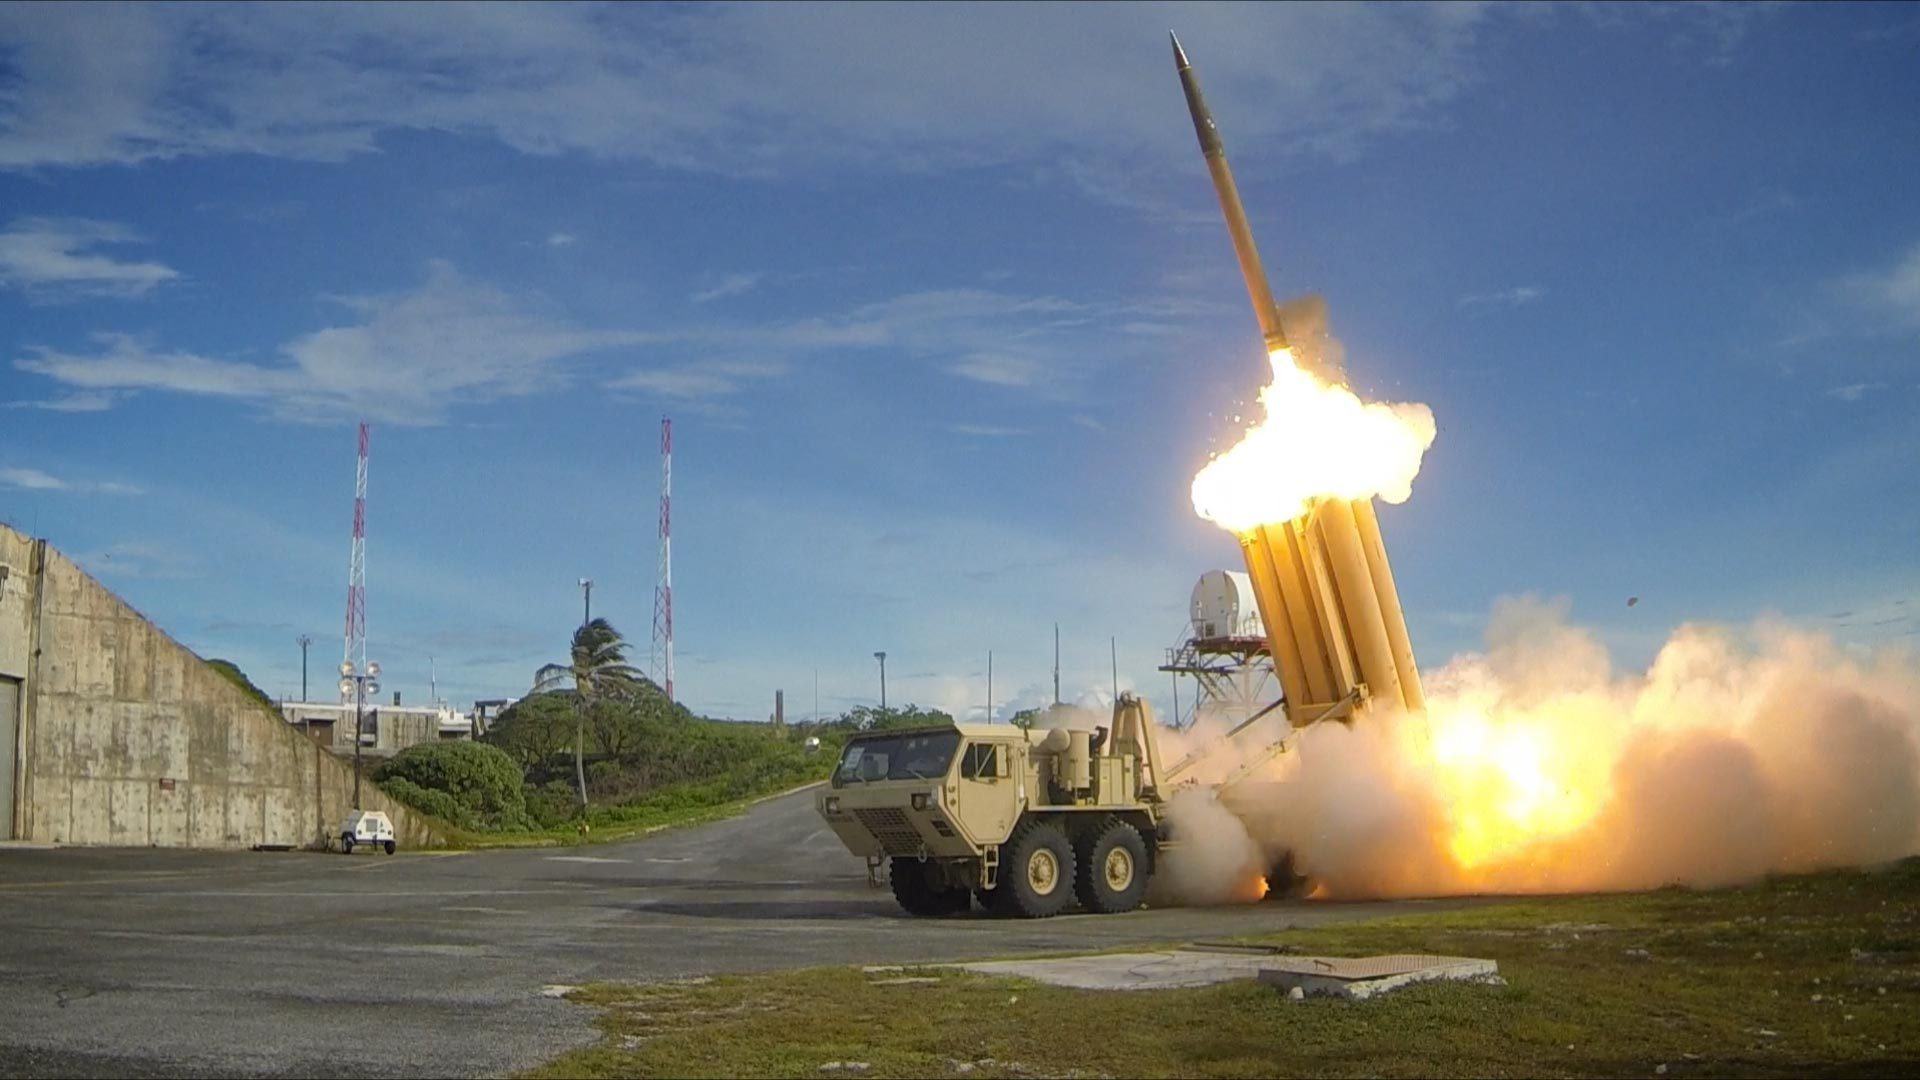 VS plaatsen THAAD in Republiek Korea - Constitutioneel Hof verwerpt verzoekschrift om plaatsing raketafweersysteem te verbieden